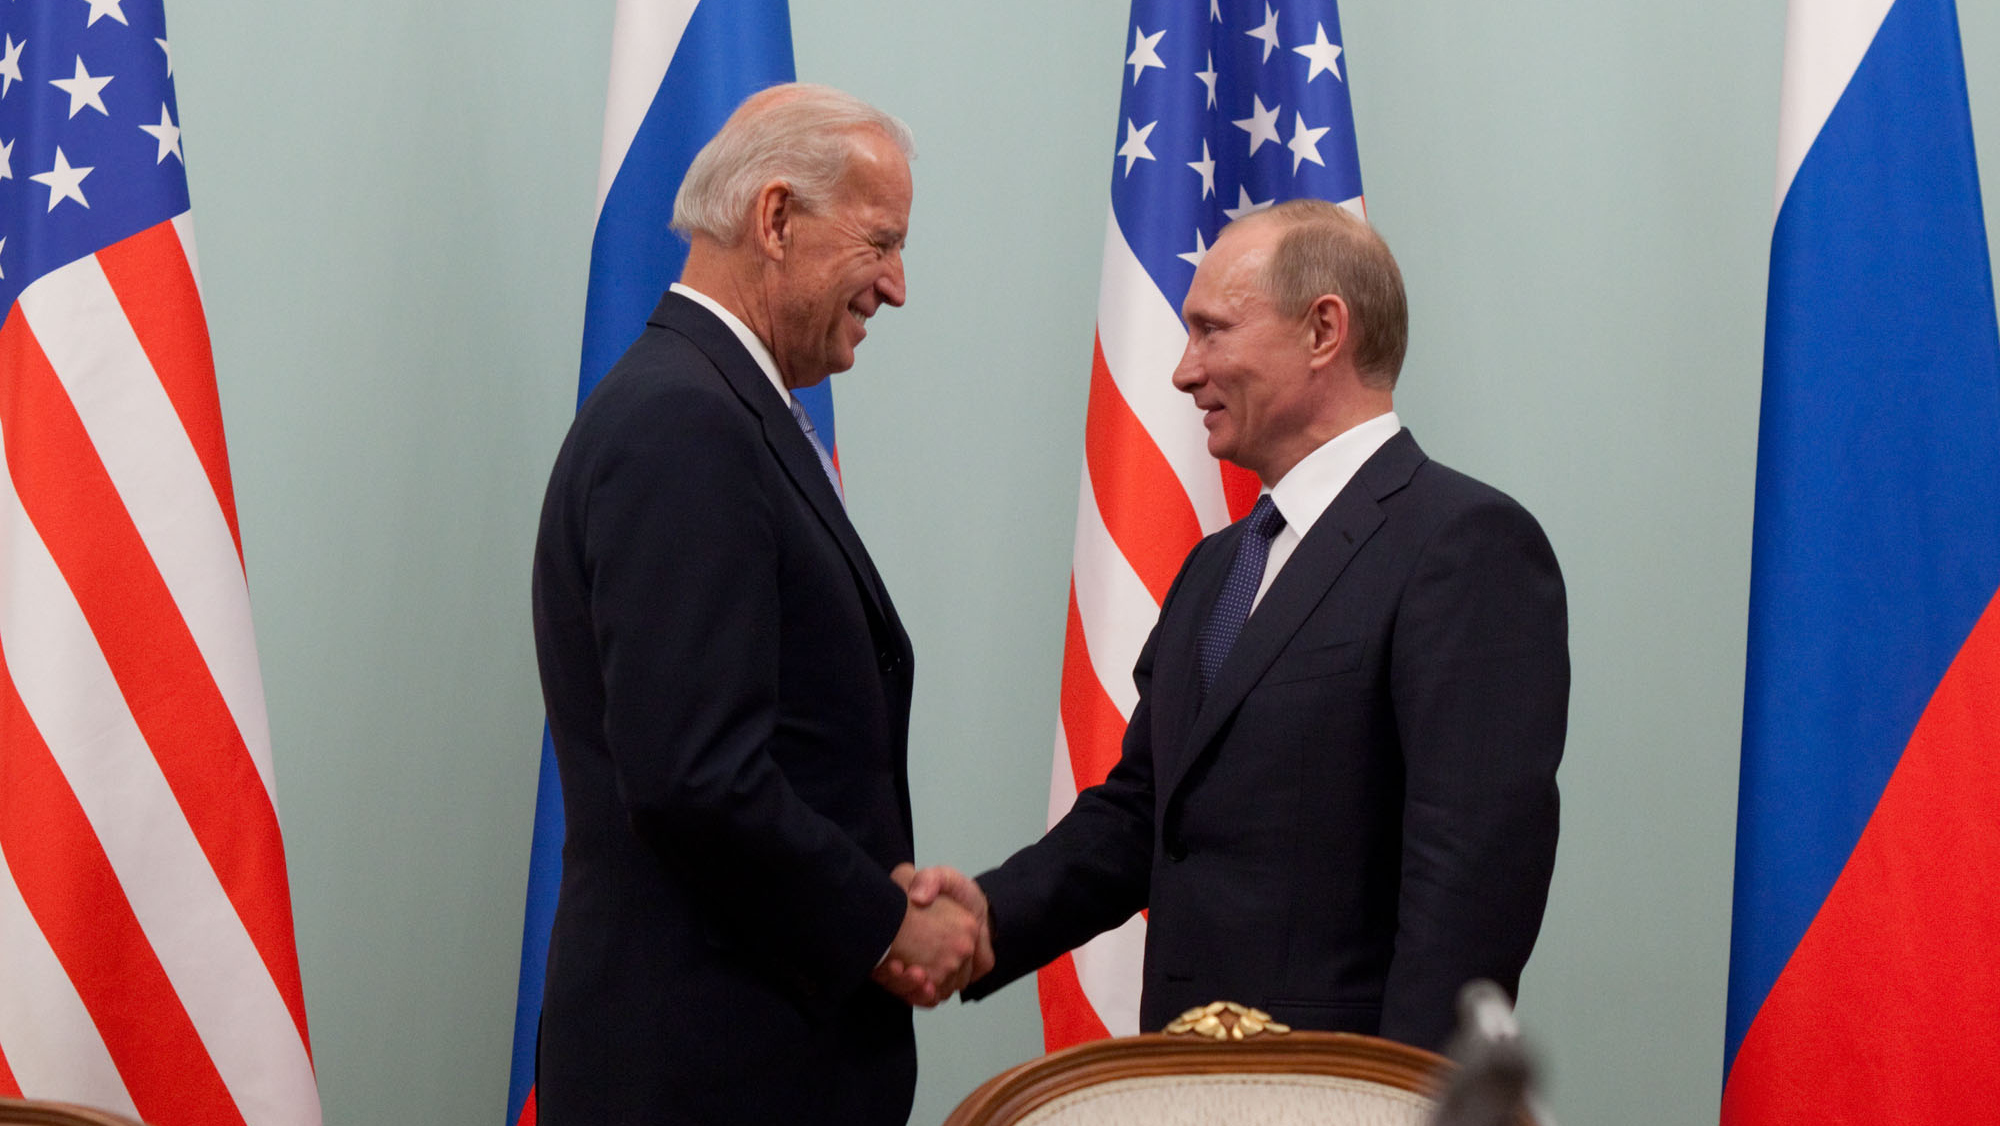 Джо Байден и Владимир Путин в 2011 году